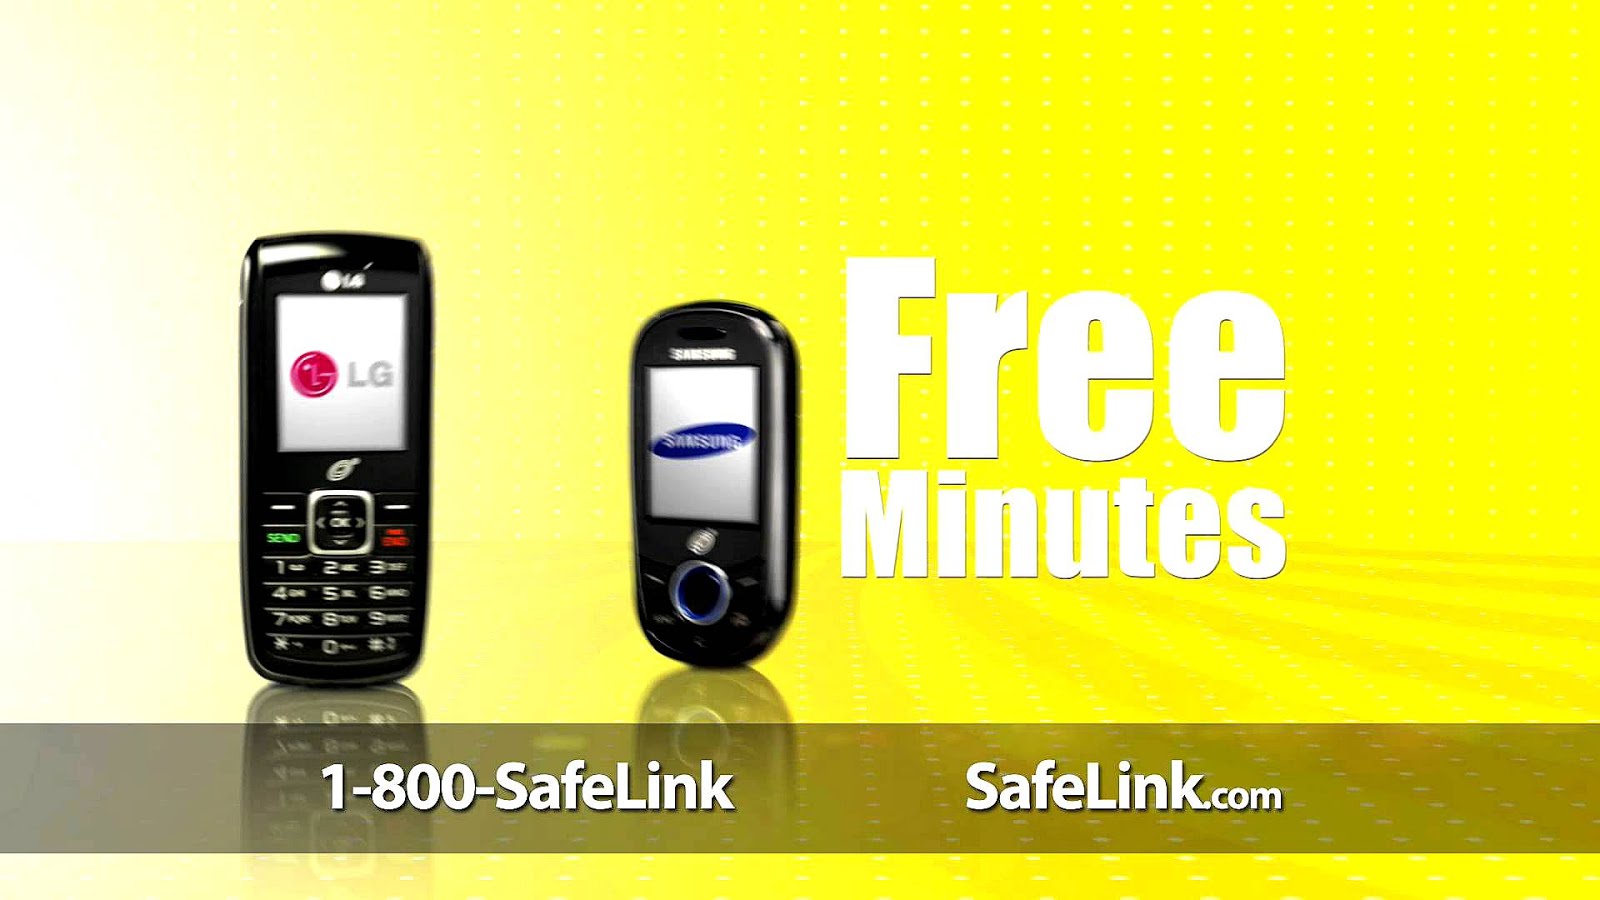 Safe link. Safelink. Qlink Wireless Phones. SAFEPHONE. Safelink Replacement Phone tracking.